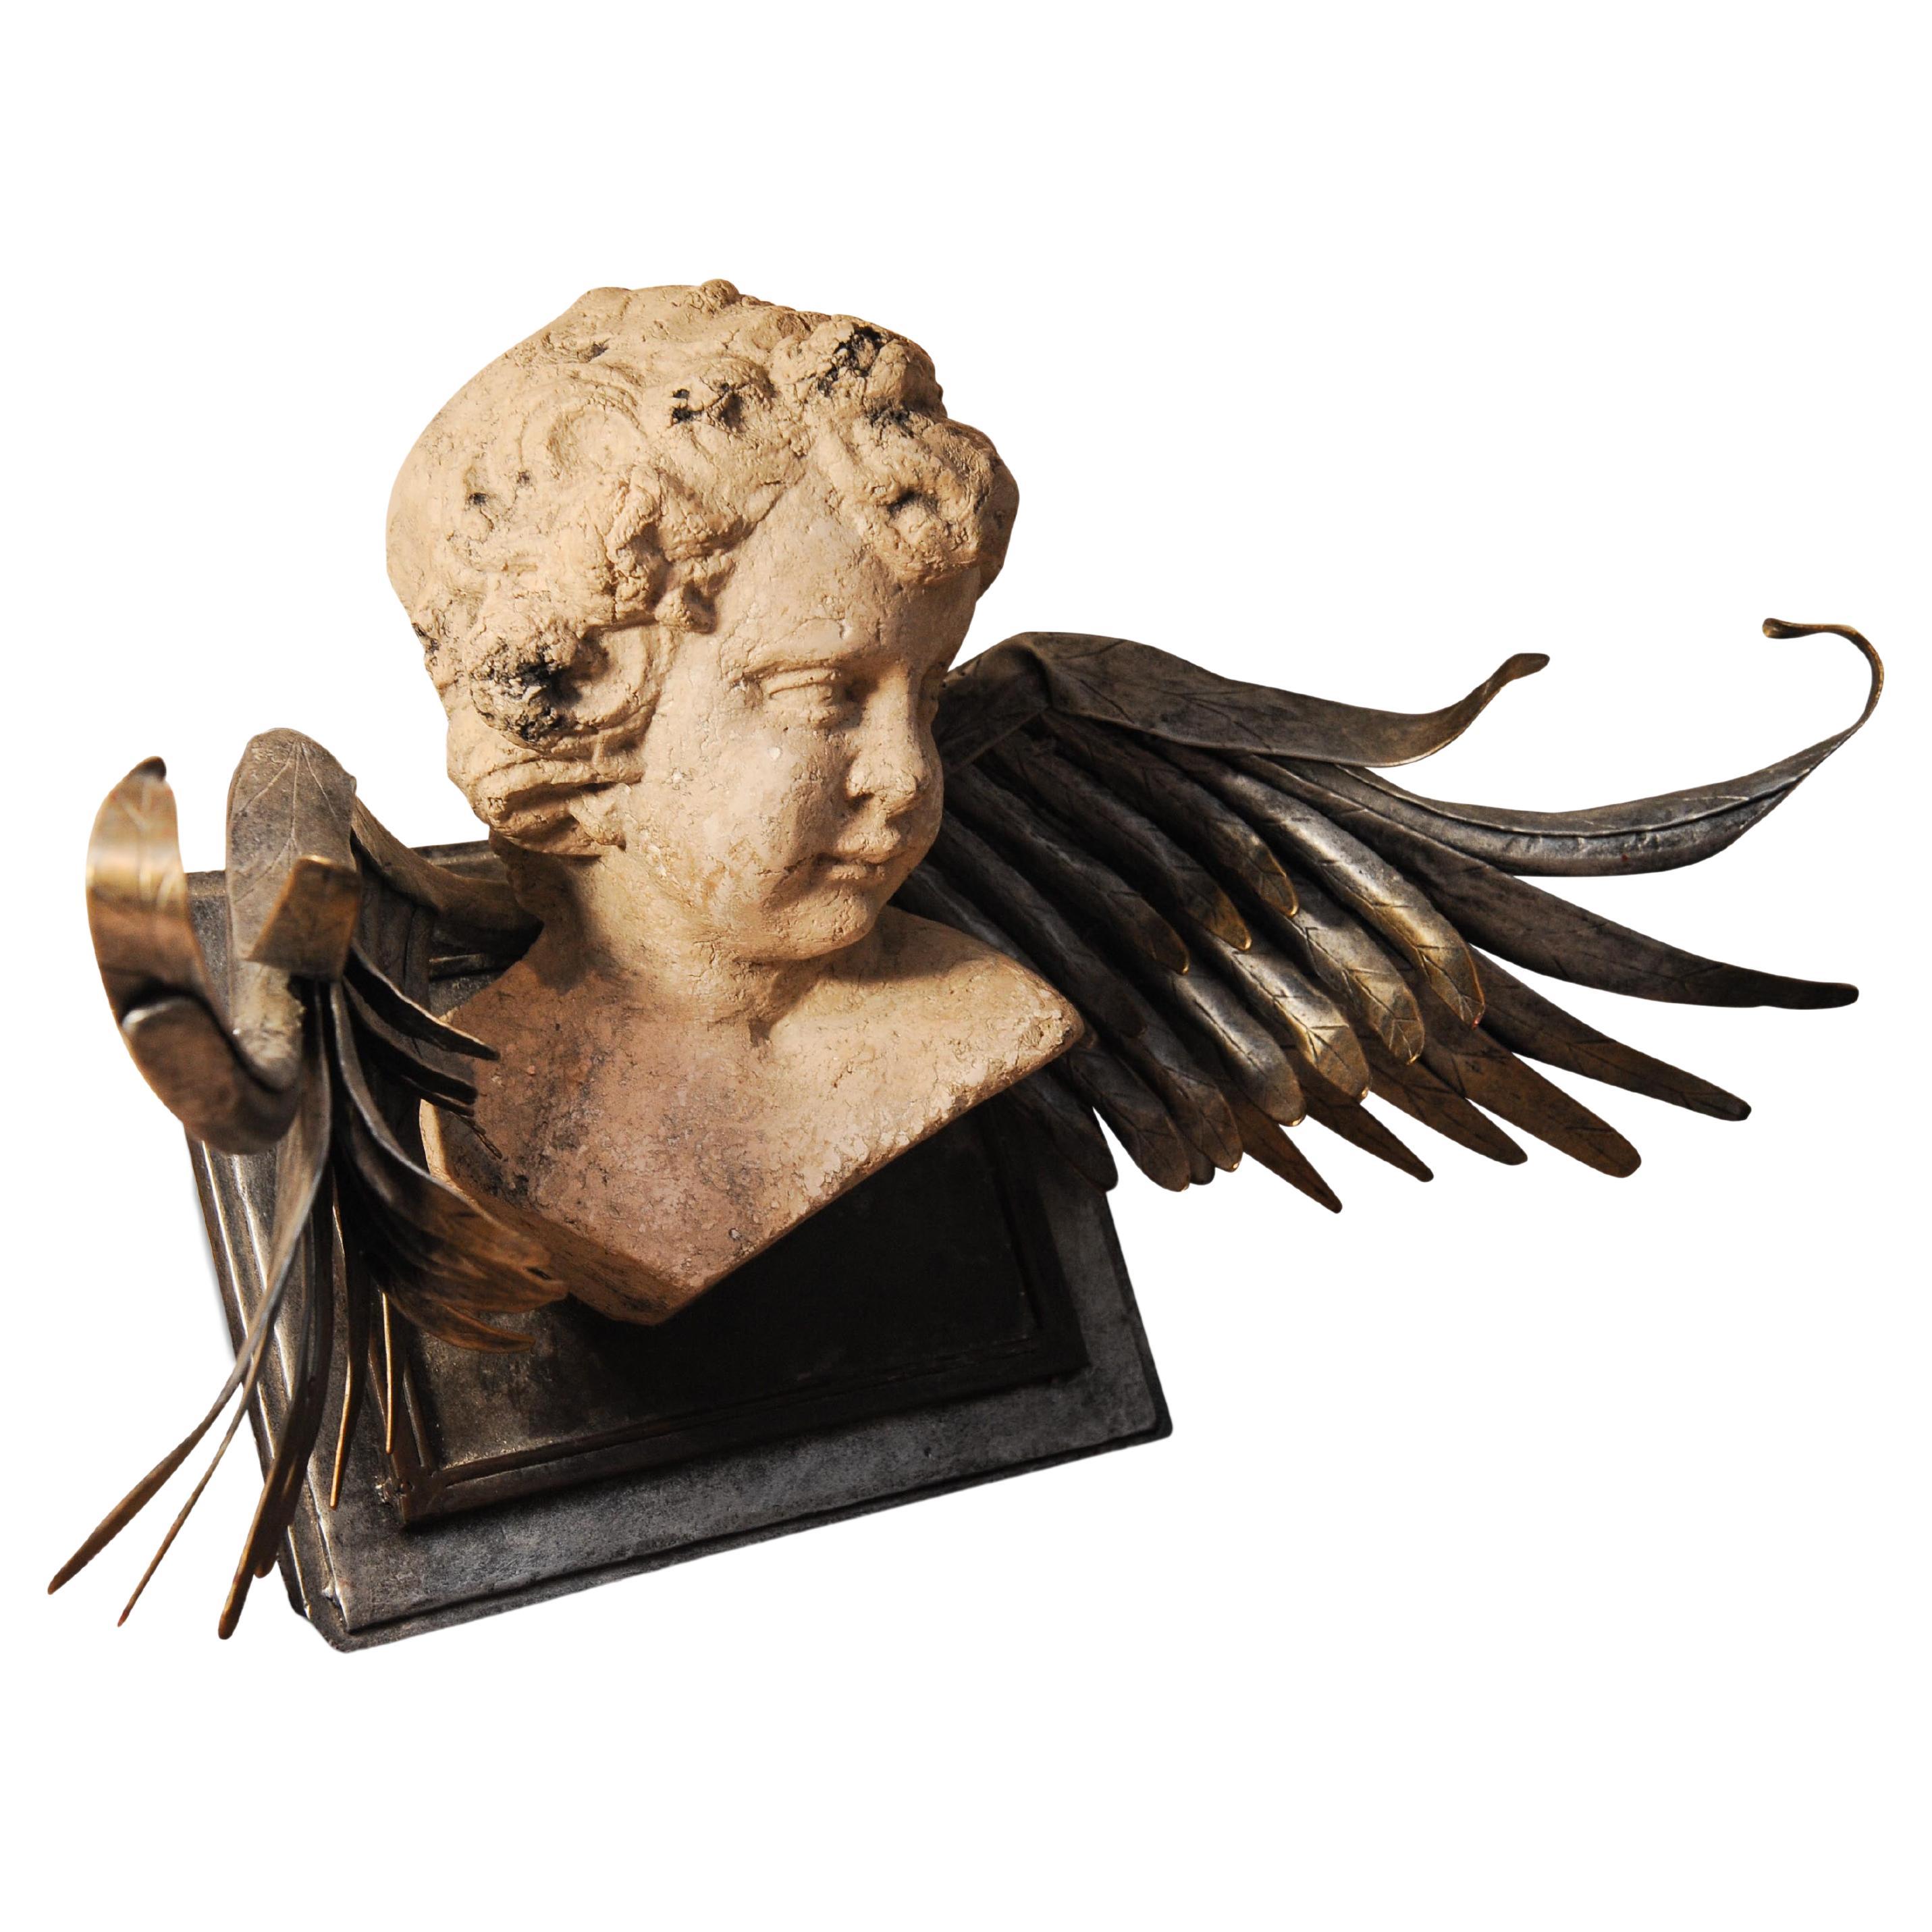 Ungewöhnliche dekorative neoklassische Revival Putti/Cherub Steinguss-Skulptur mit metallischen Flügeln, Wandmontage möglich.

Der Klassizismus ist eine spezifische philosophische Richtung, die sich in der Literatur, Architektur, Kunst und Musik